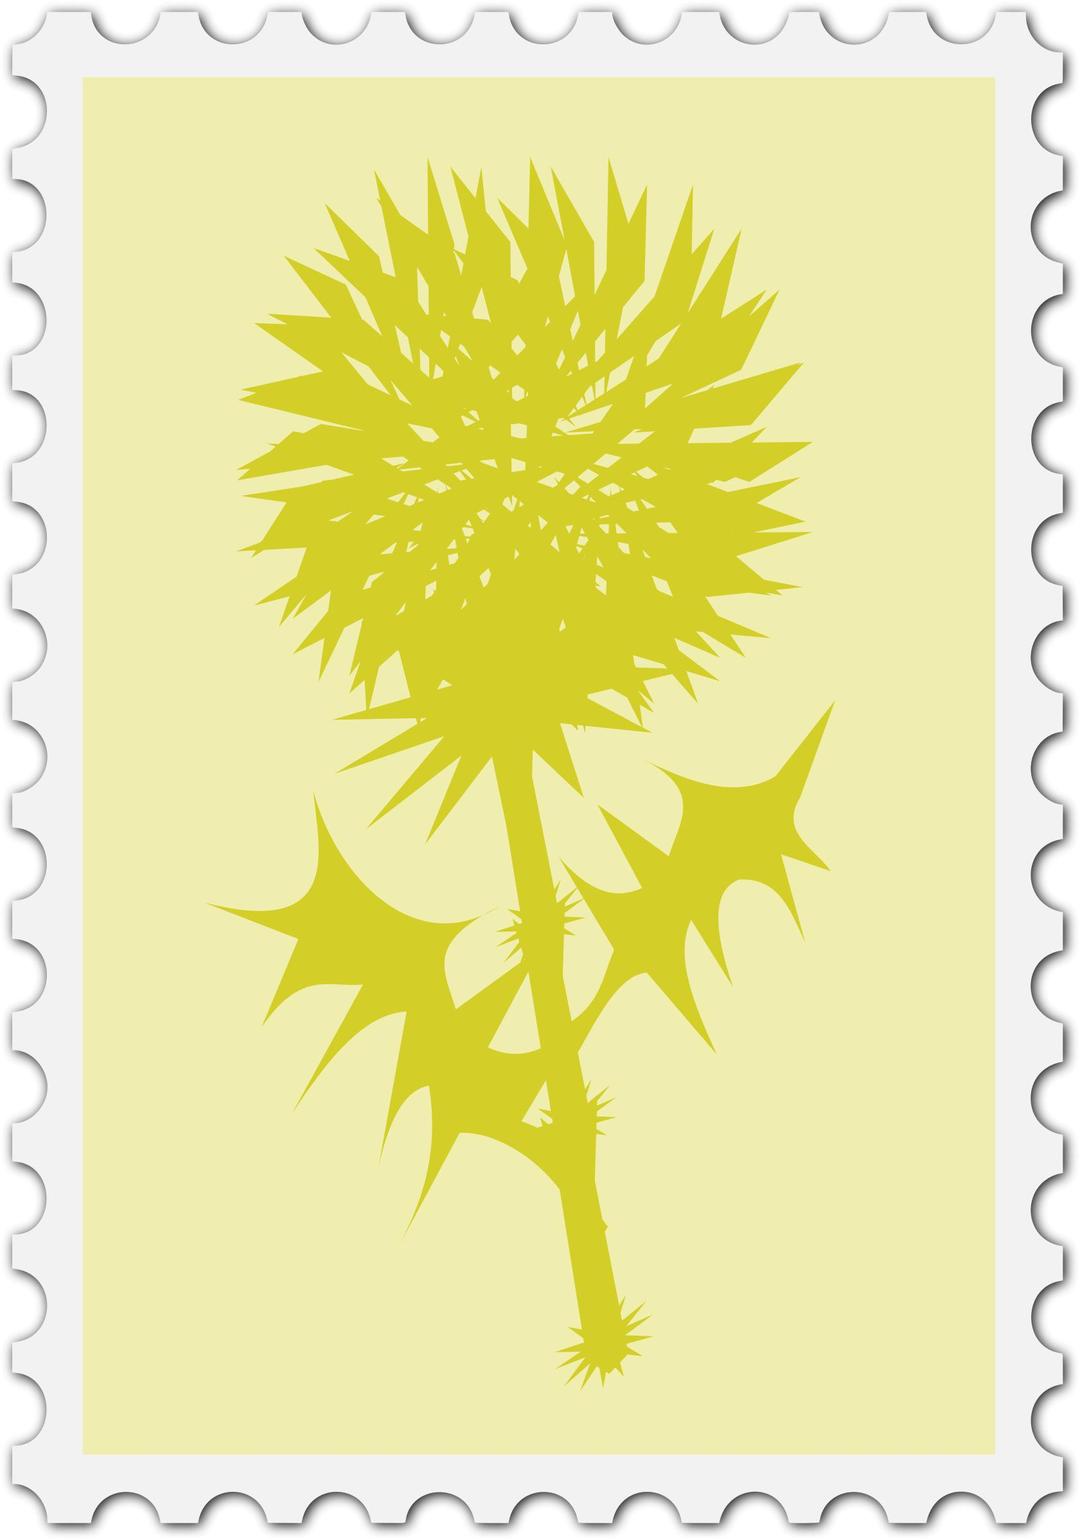 Scottish stamp png transparent